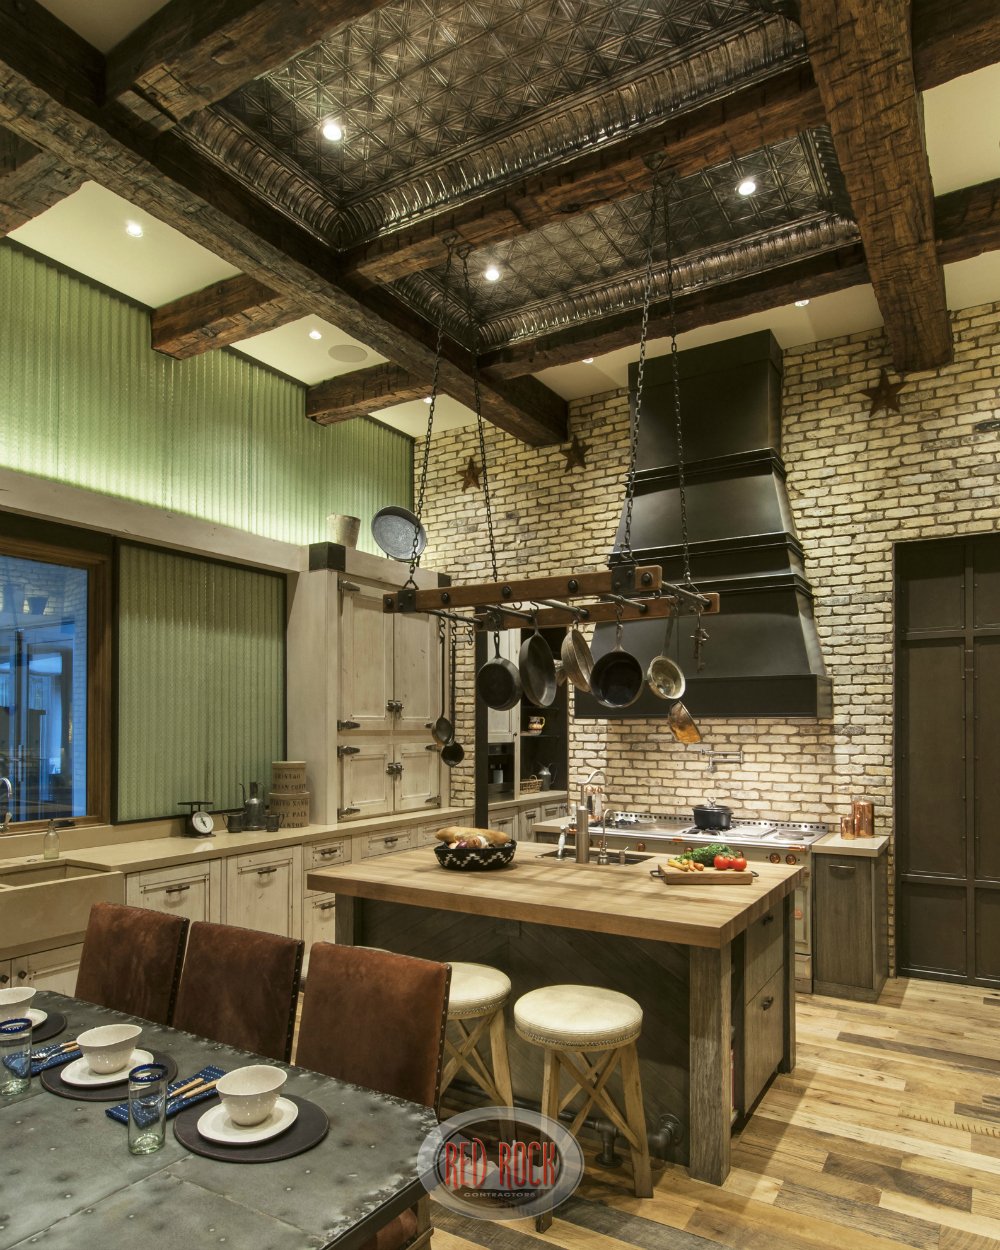 这张自定义乡村厨房的照片展示了令人印象深刻的锡和暴露的木材高架天花板。